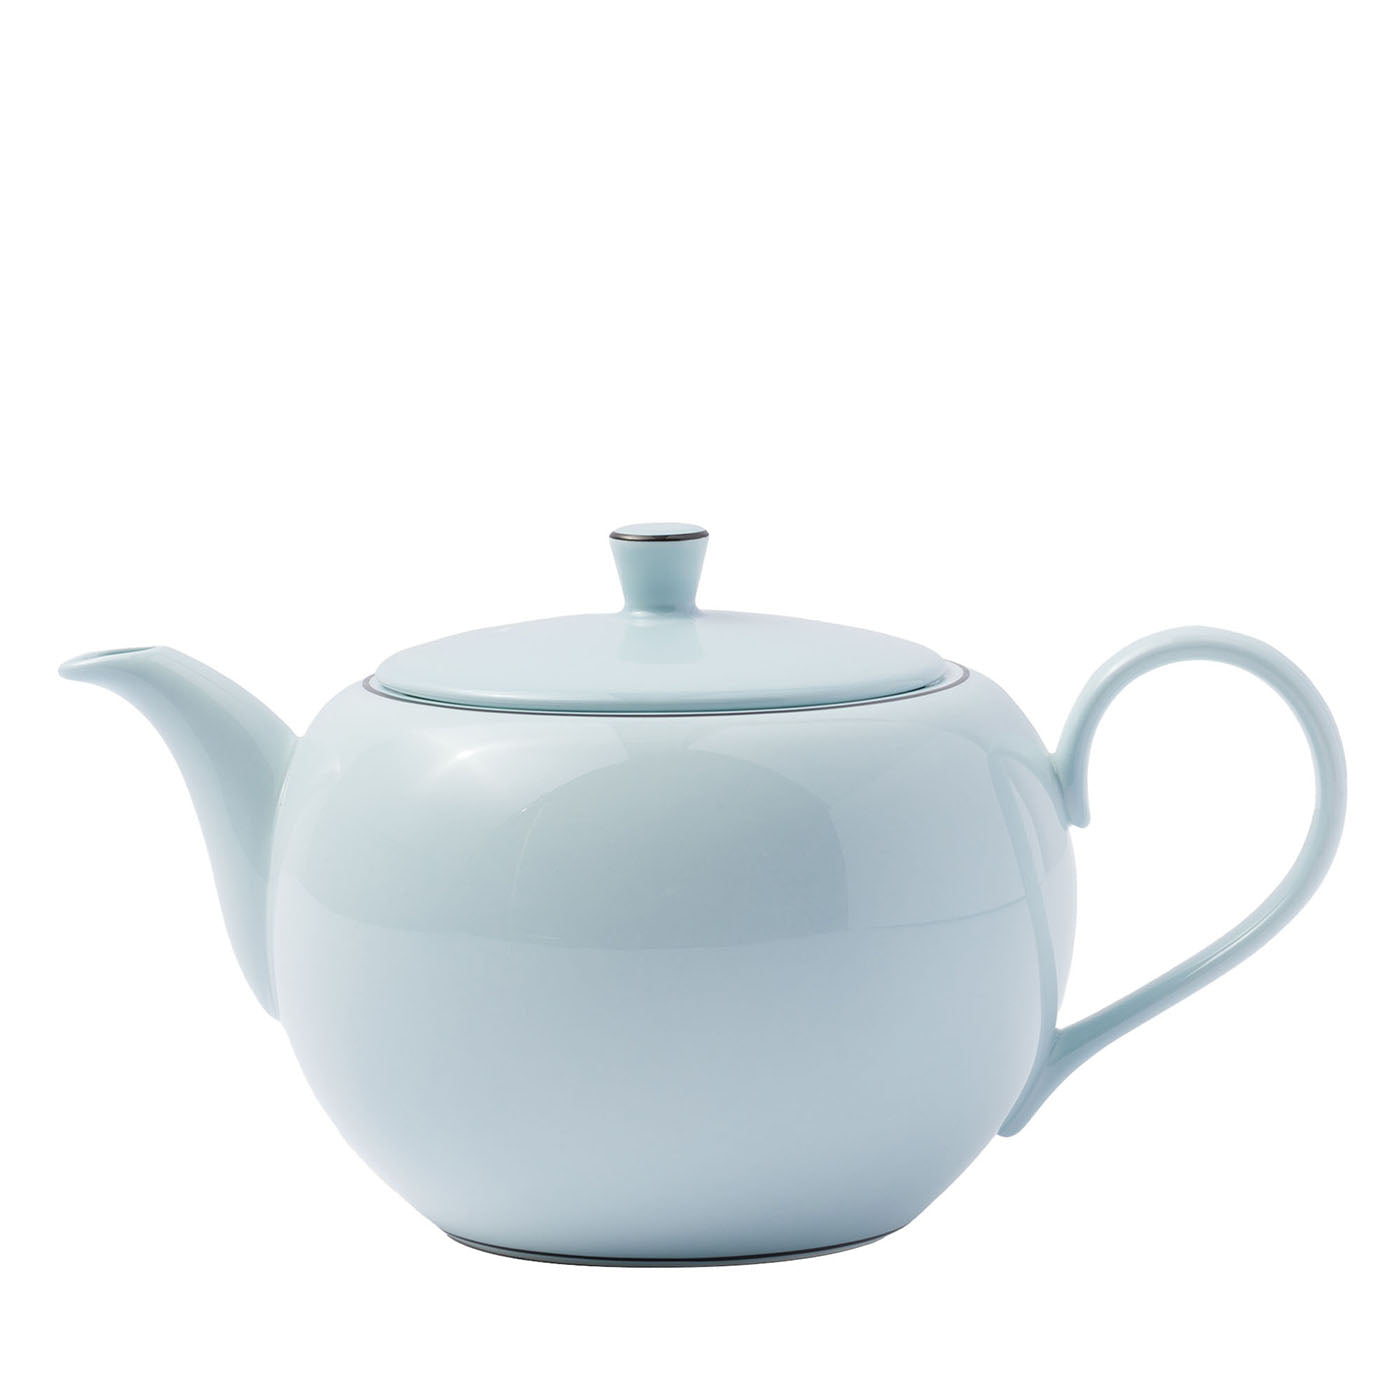 Celadon Porzellan Teekanne - Hauptansicht